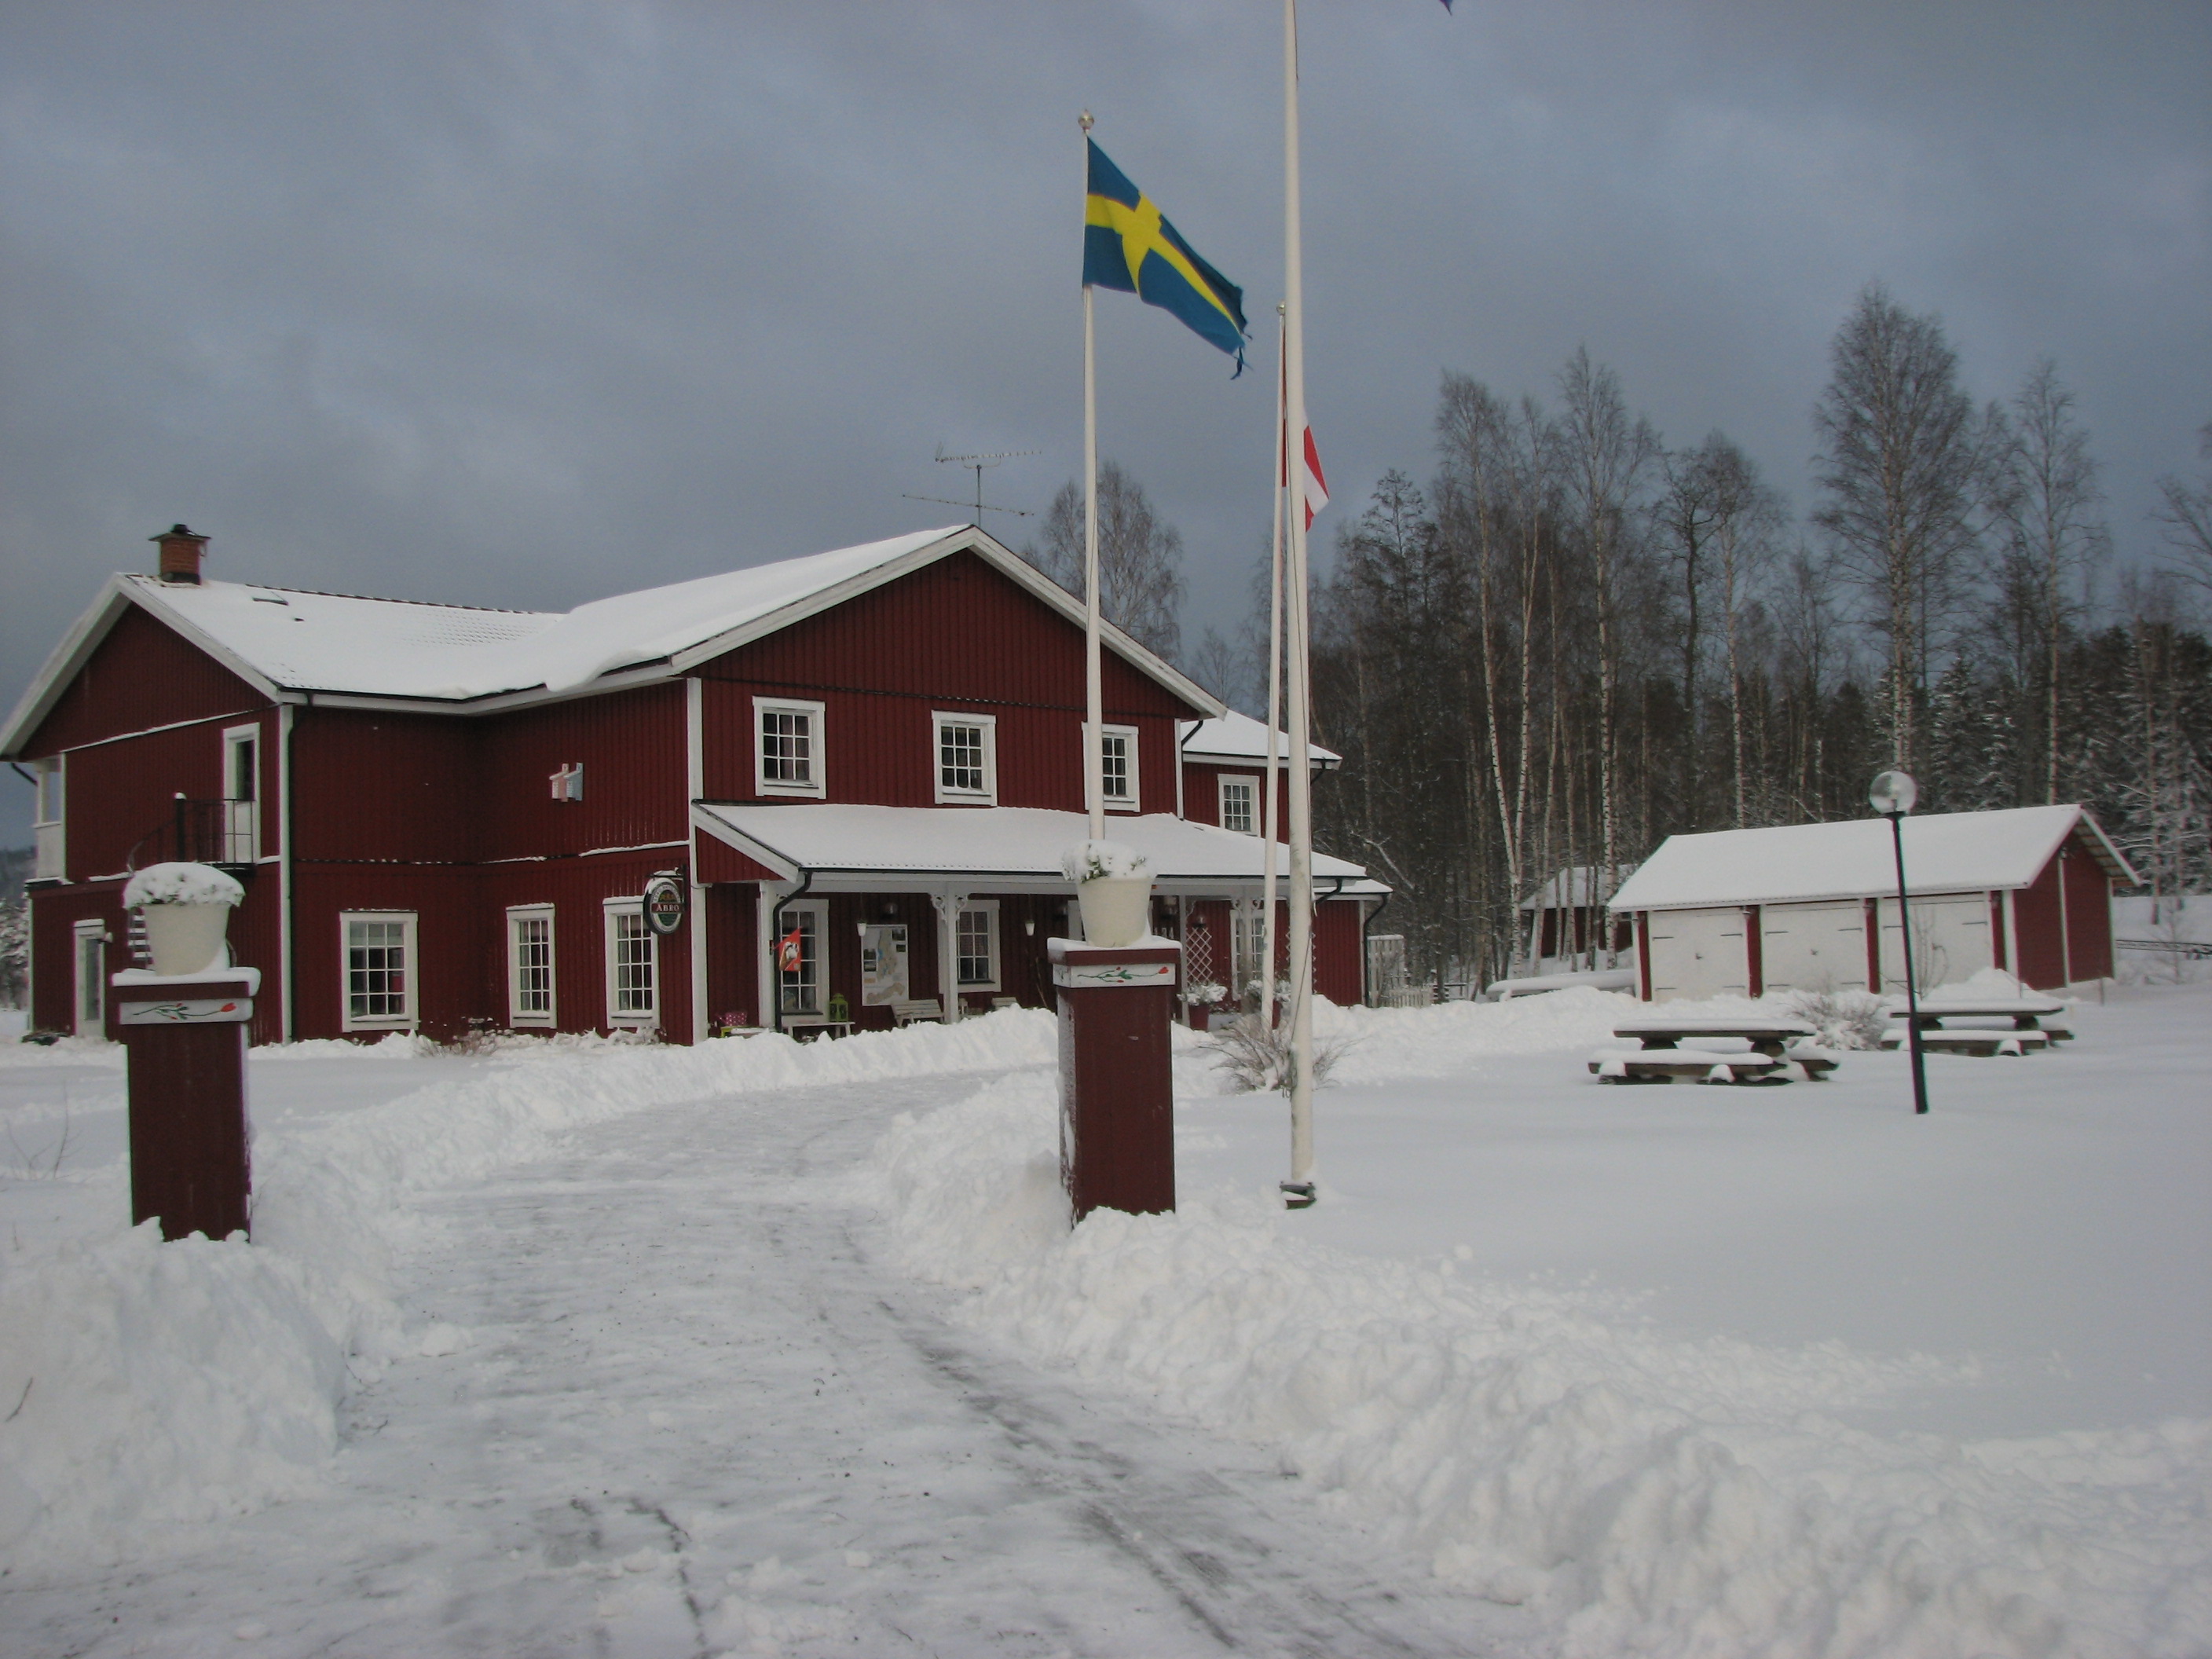 Edsleskogs Wärdshus bietet eine gemütliche Unterkunft in Schweden. Eisangler sind hier im Paradies.